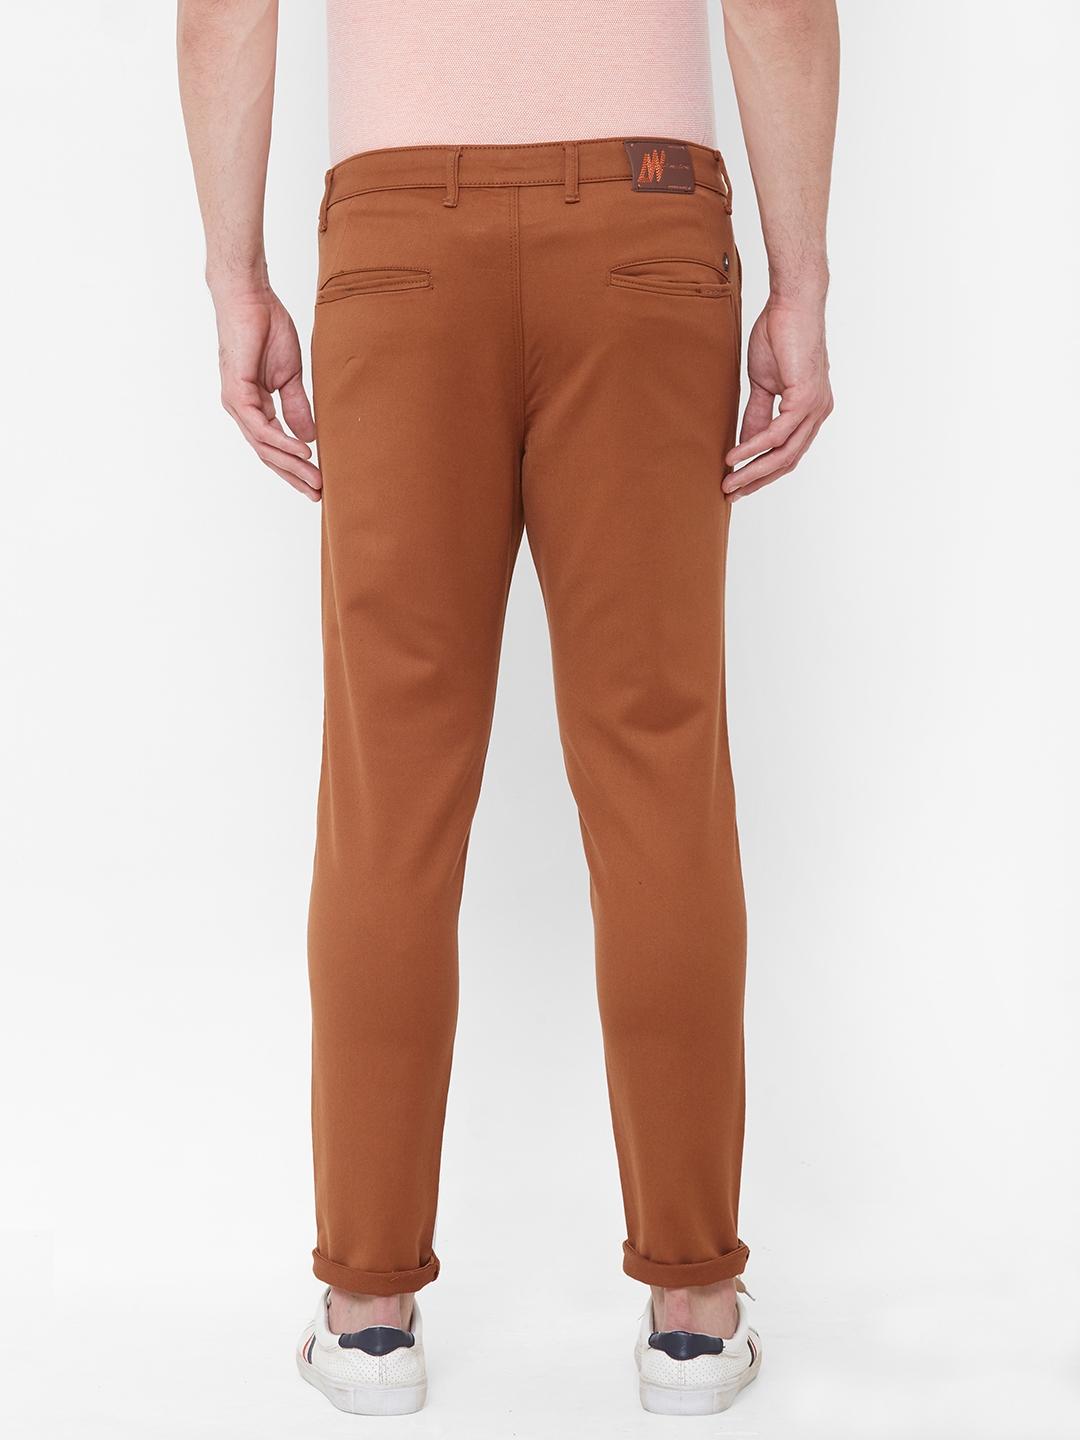 Livewire | Livewire Men's Cotton Lycra Rust Slim Fit Solid Trouser 1